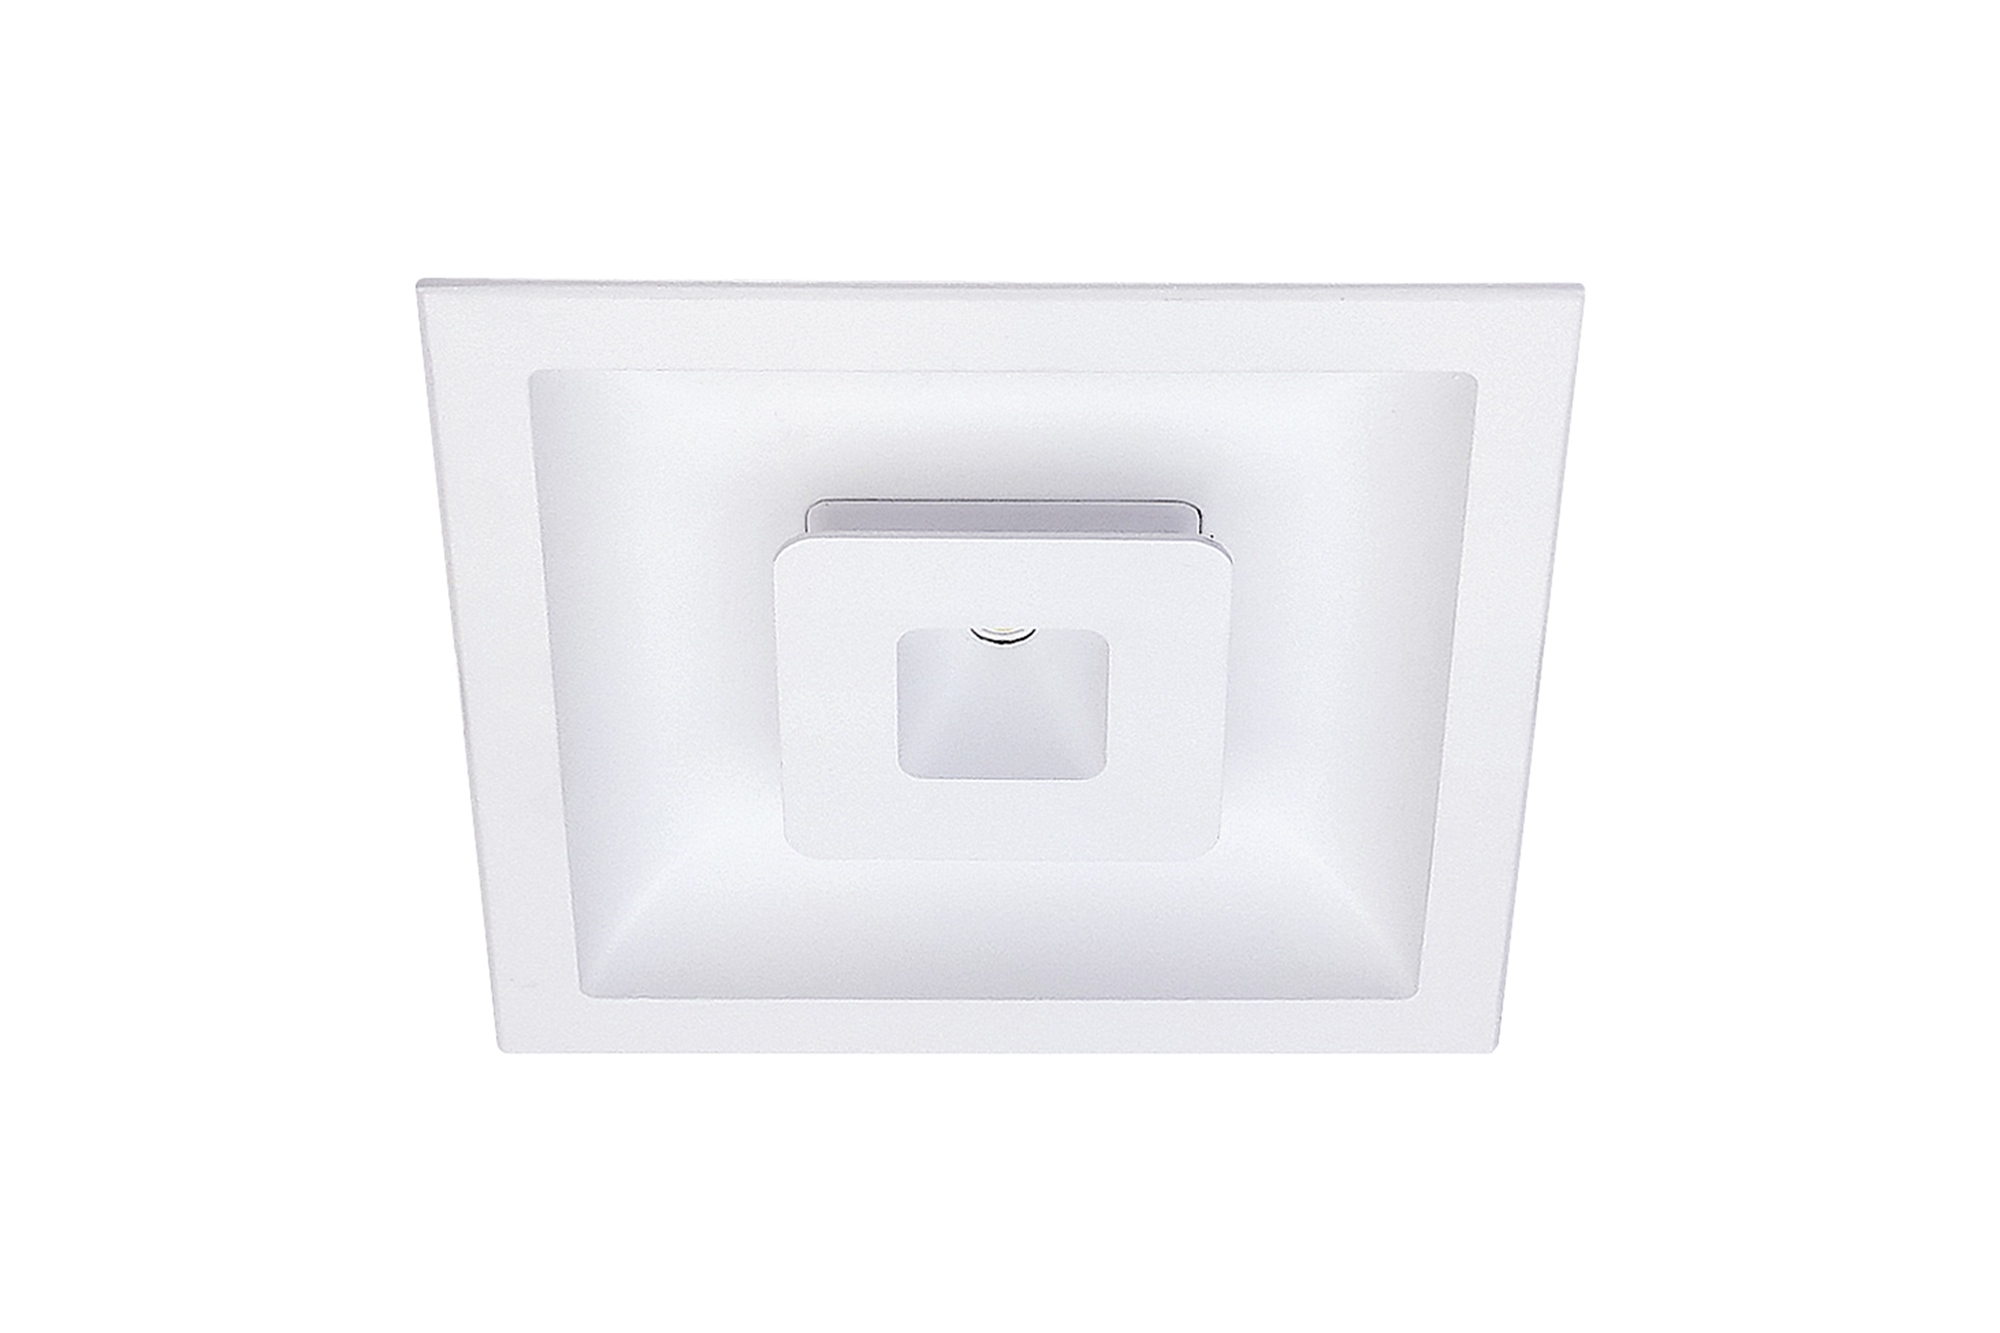 Lampenlux LED Einbaustrahler Sondor Spot eckig weiß inkl Trafo direkte und indirekte Beleuchtung Aluminium 12.0x12.0 cm